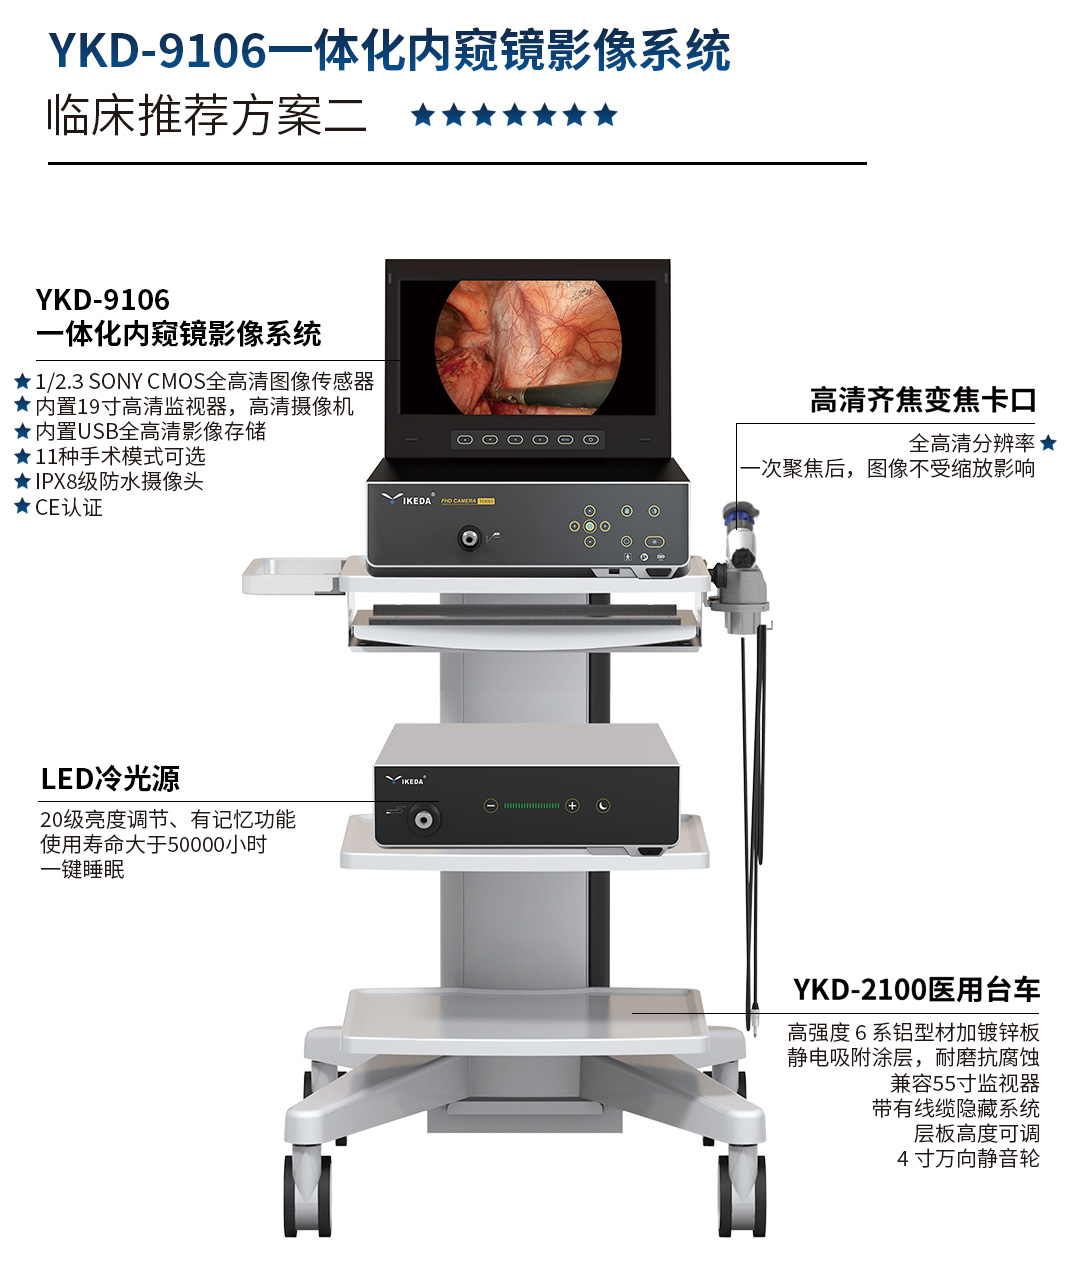 YKD-9106 一体化内窥镜影像系统